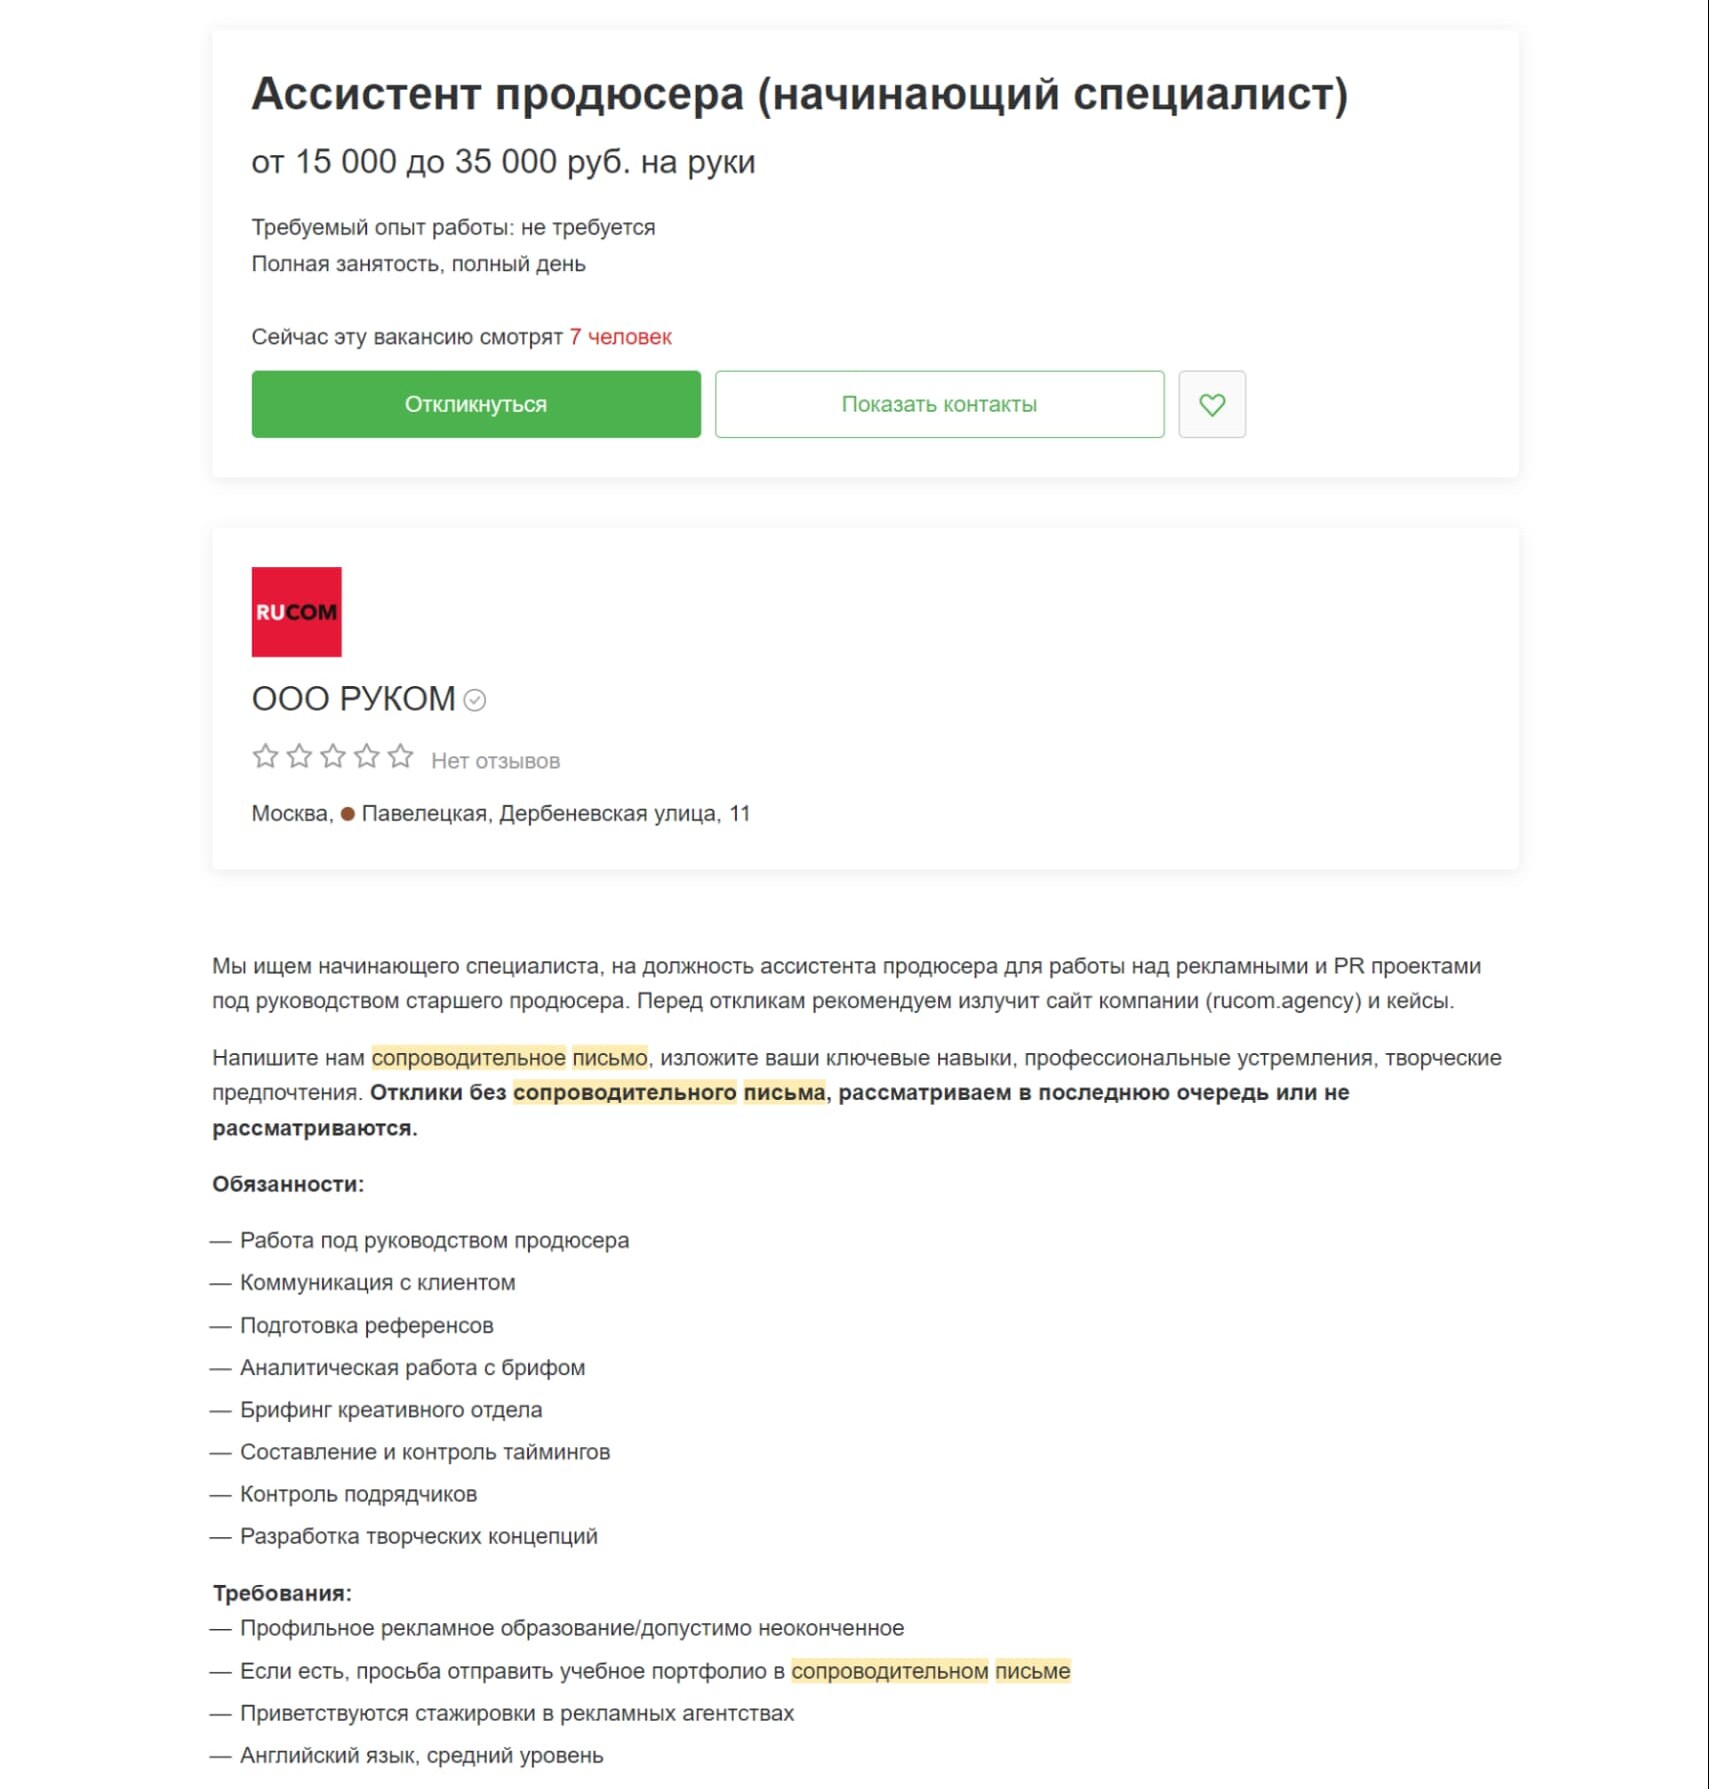 Рассмотрим, как составить сопроводительное письмо, на примере конкретной вакансии с сайта hh.ru: